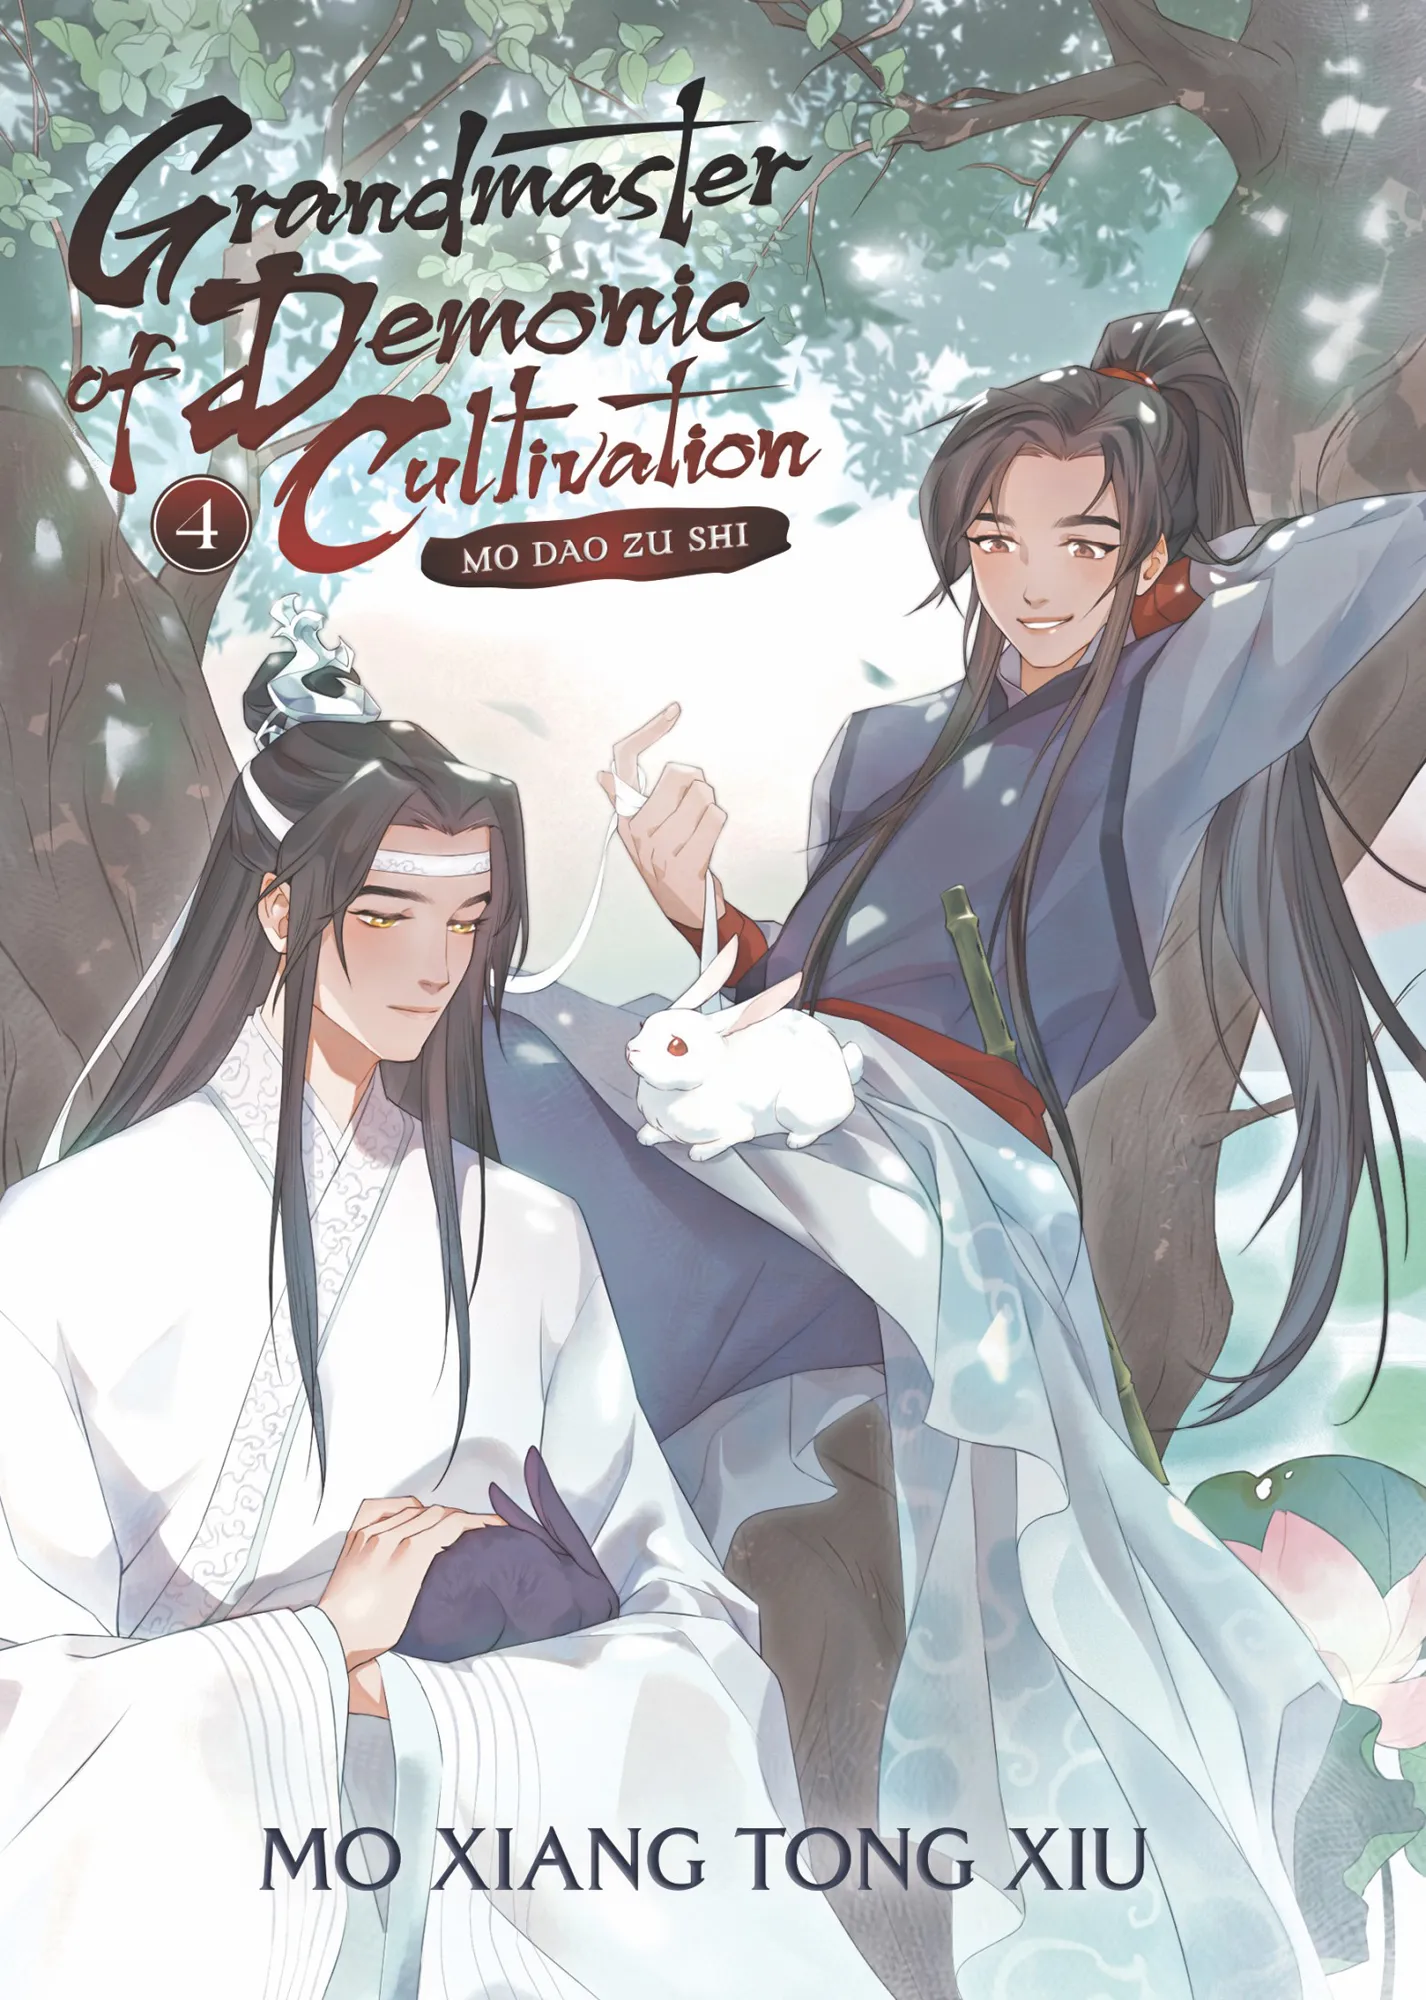 Mo Dao Zu Shi (Novel) Vol. 4 (Grandmaster of Demonic Cultivation: Mo Dao Zu Shi #4)